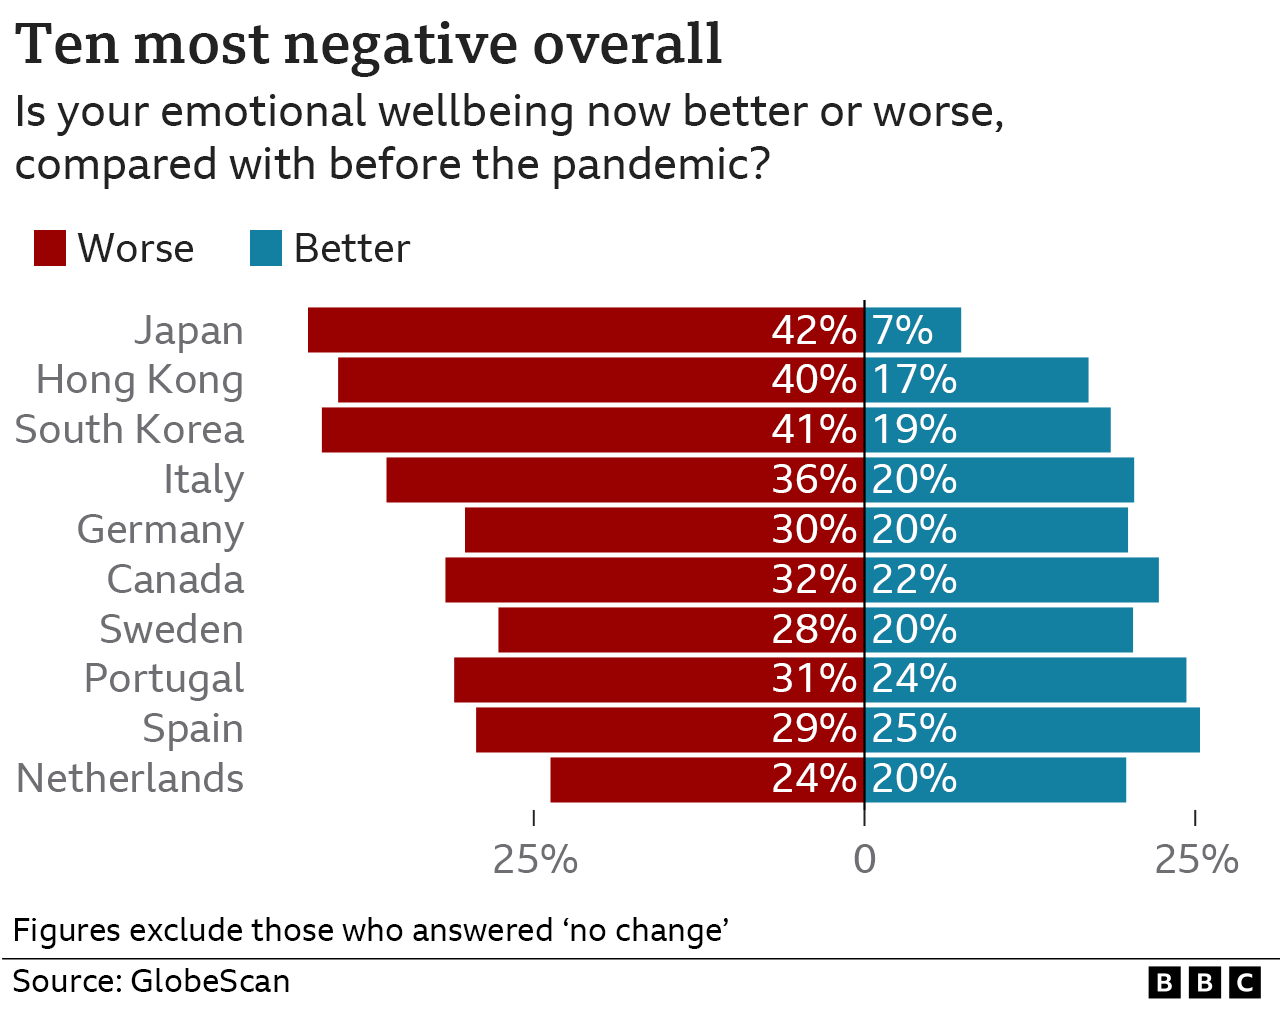 Десять самых негативных стран и территорий в целом (по влиянию пандемии на благополучие)